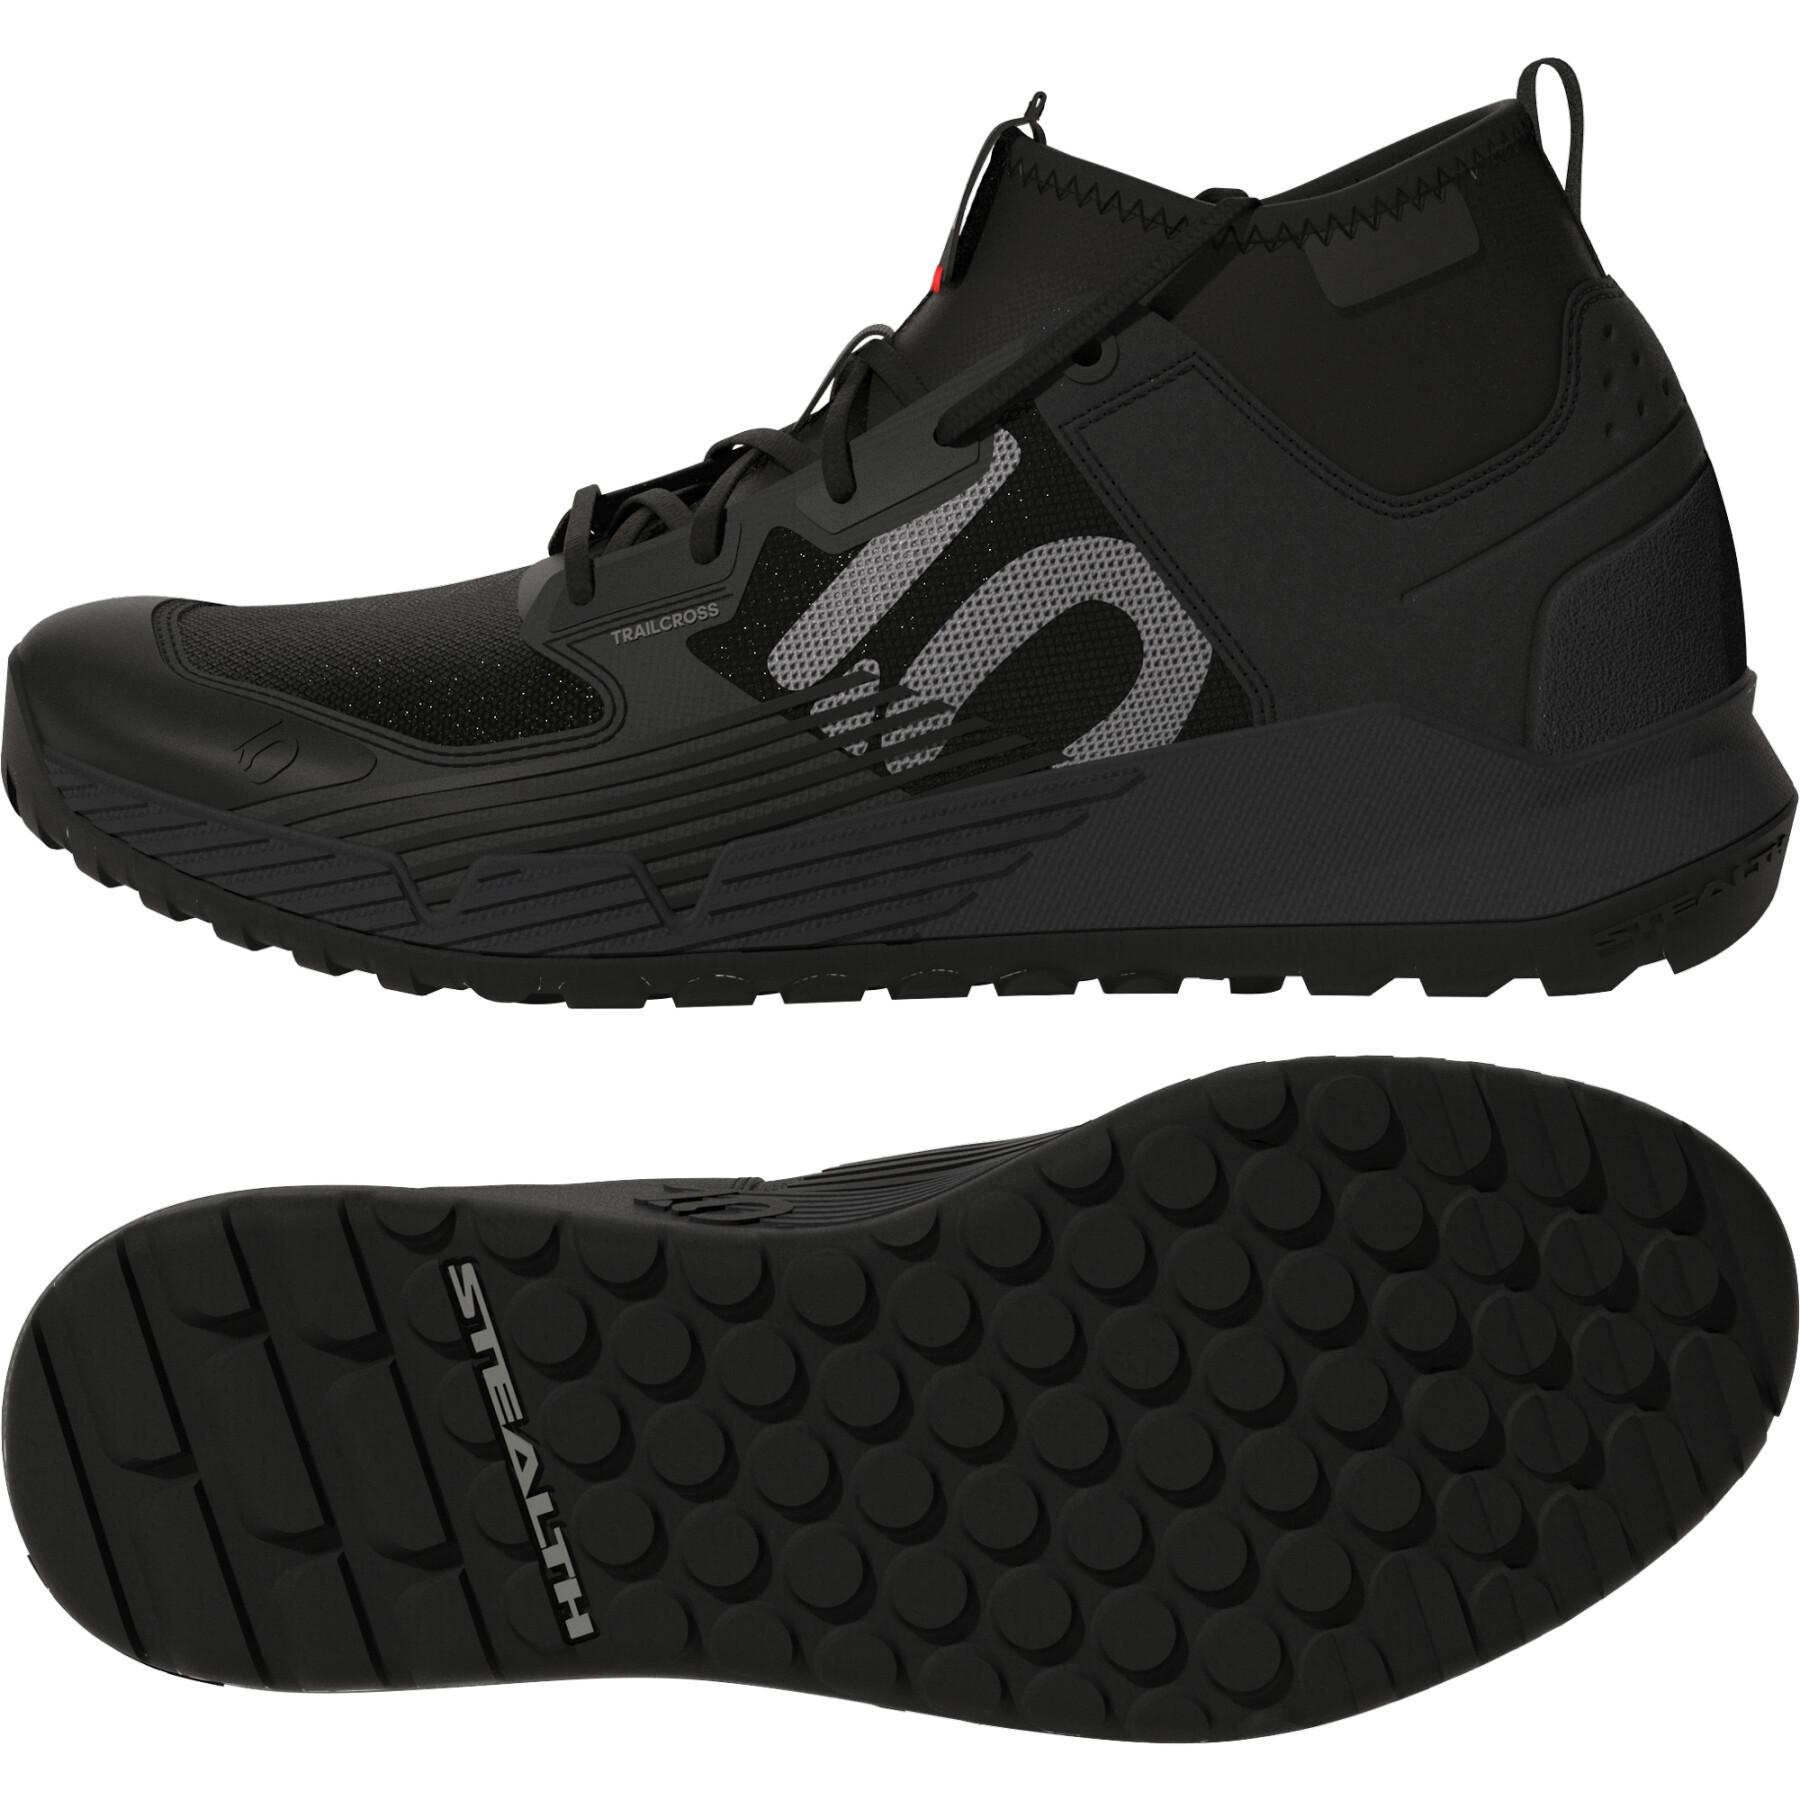 Women's shoes adidas 5.10 TrailCross XT